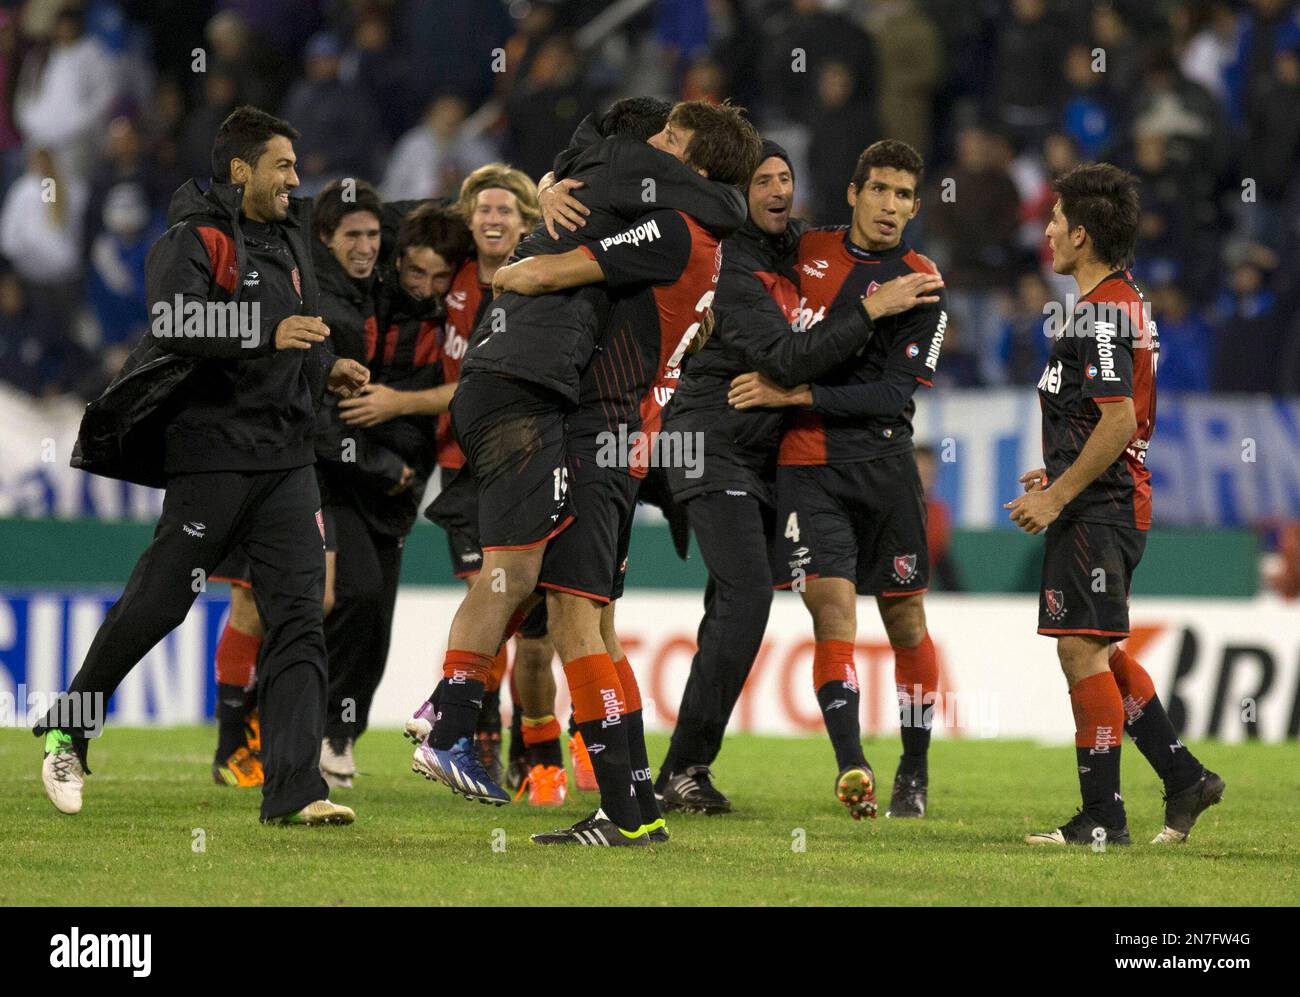 The Rivalry Renewed: Lazio vs. AS Roma